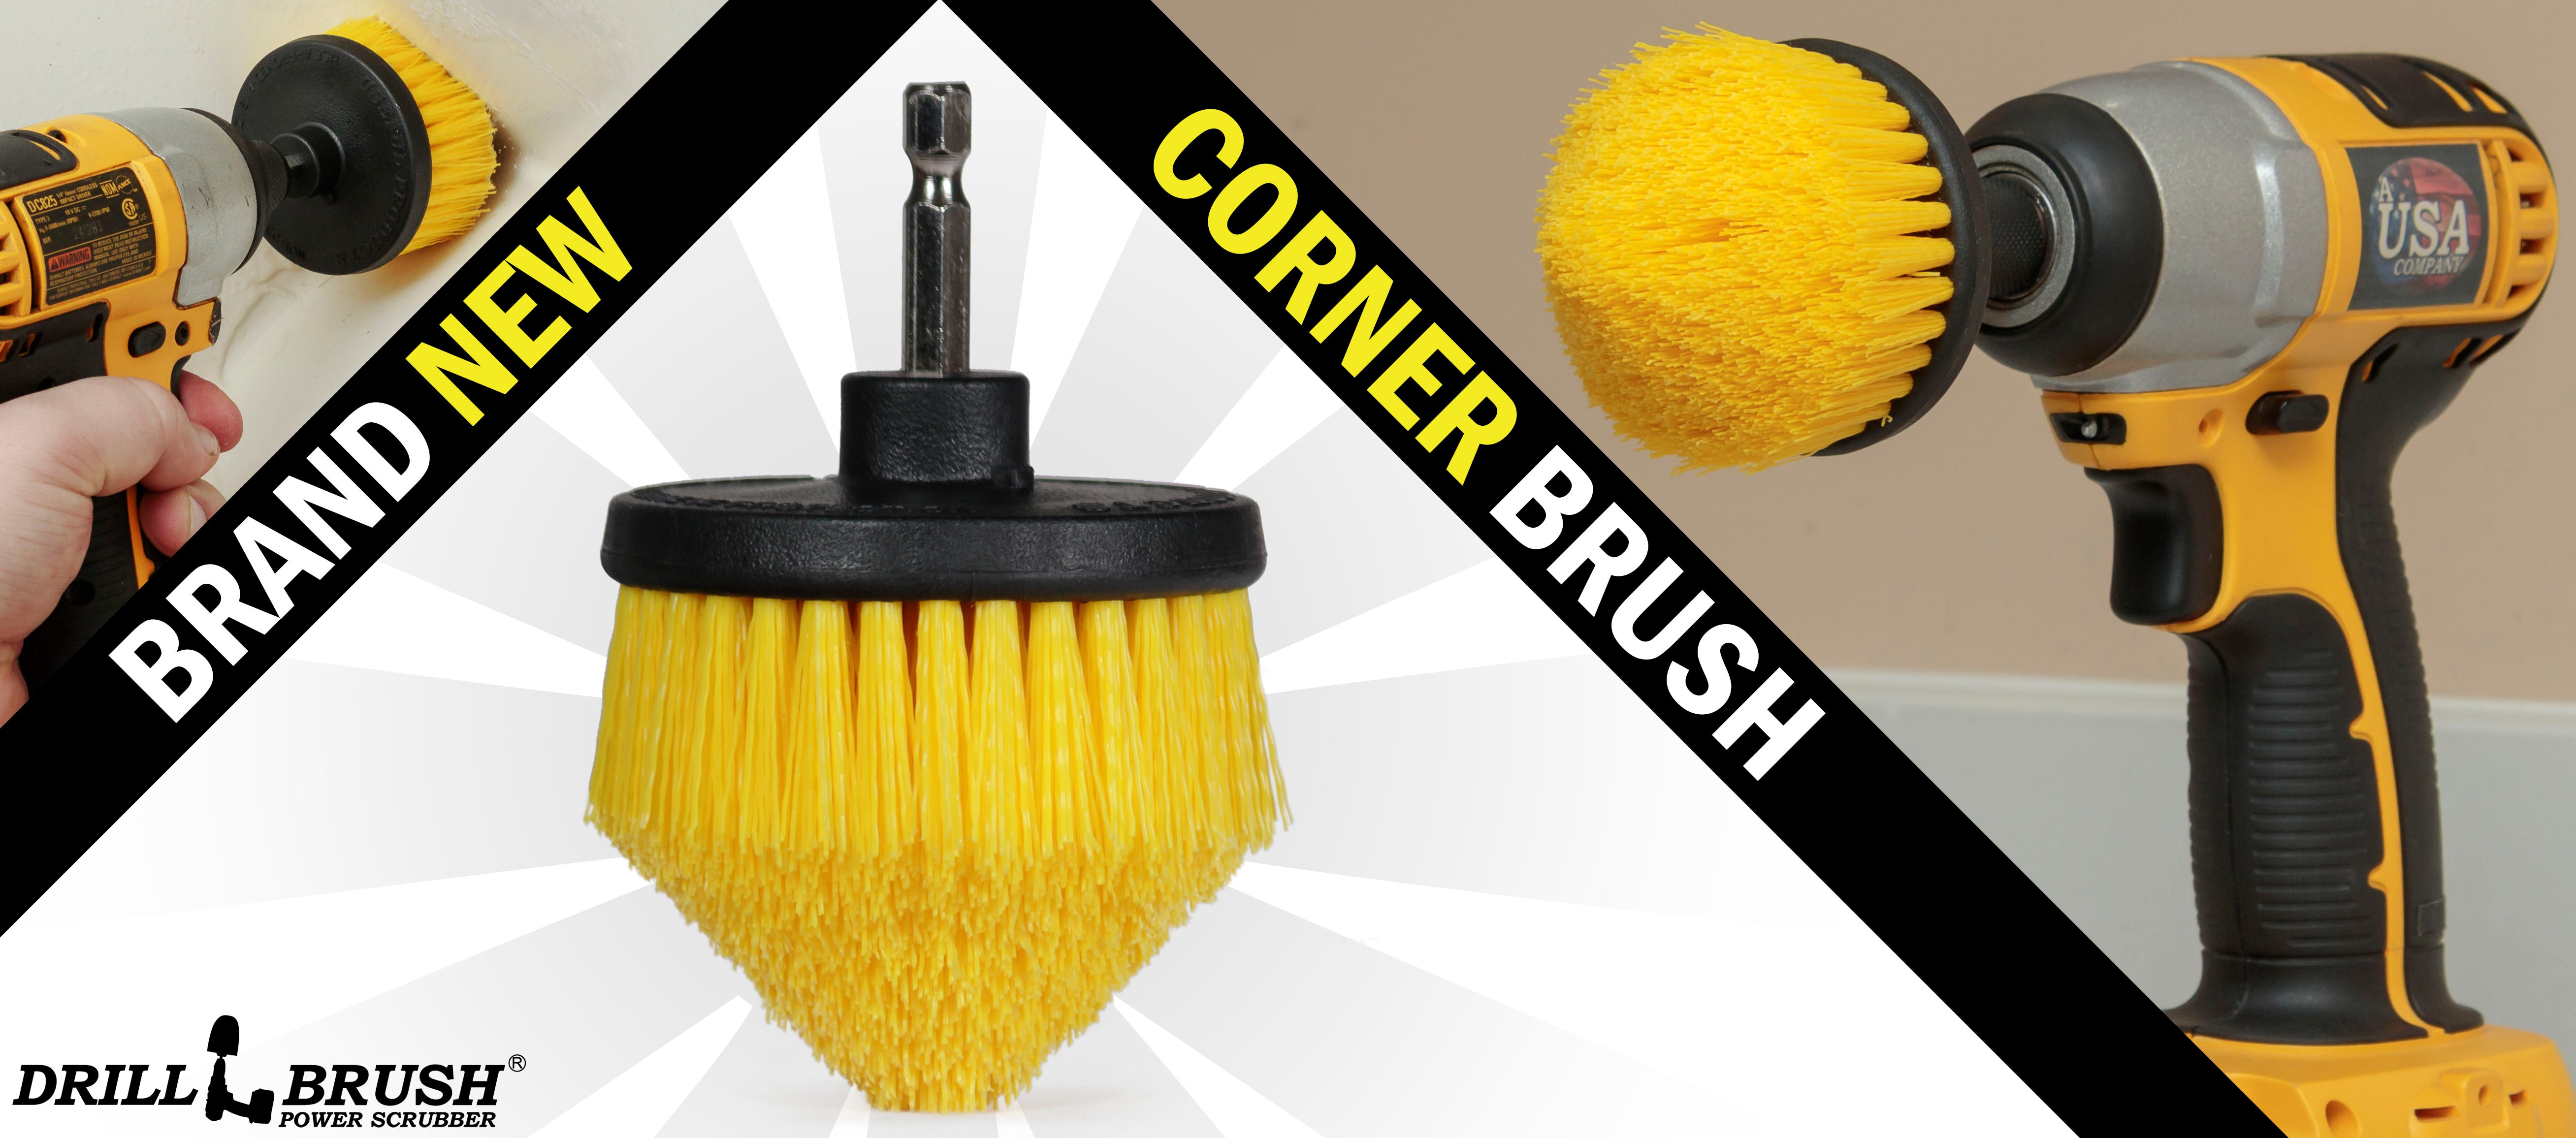 NEW FROM DRILLBRUSH - The Corner Brush! 